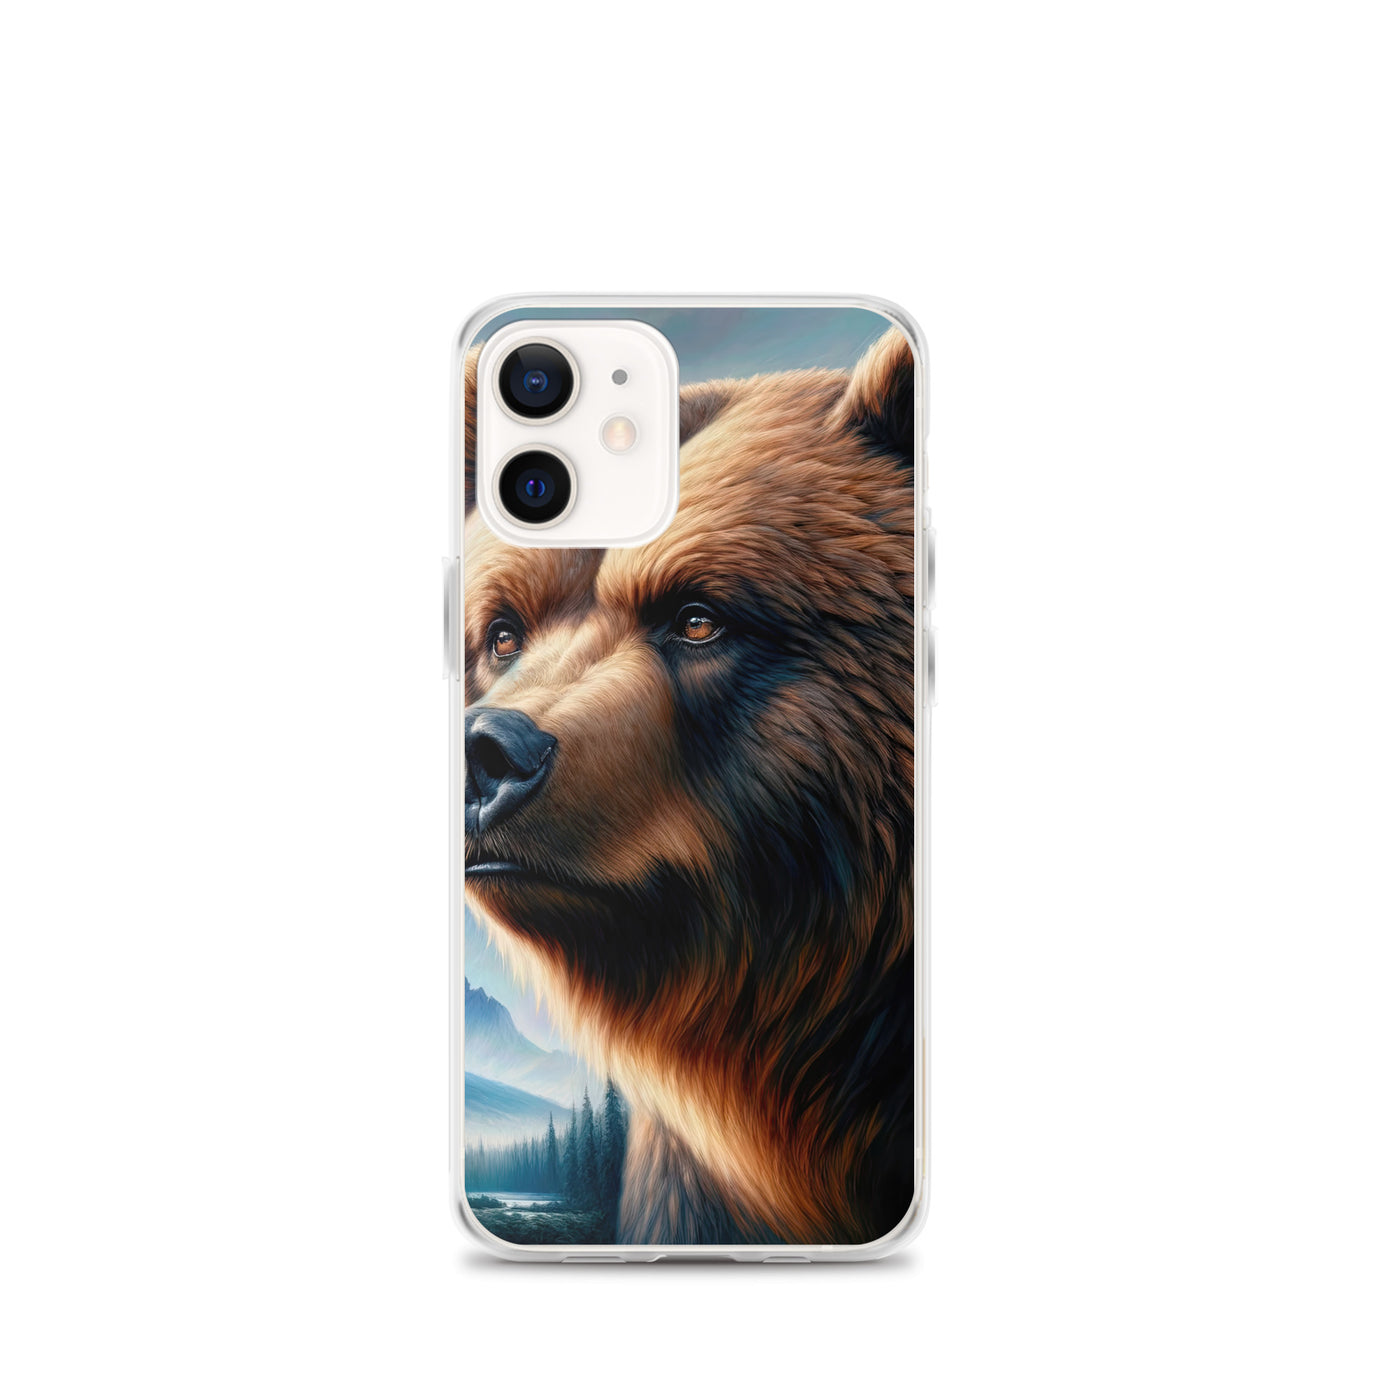 Ölgemälde, das das Gesicht eines starken realistischen Bären einfängt. Porträt - iPhone Schutzhülle (durchsichtig) camping xxx yyy zzz iPhone 12 mini